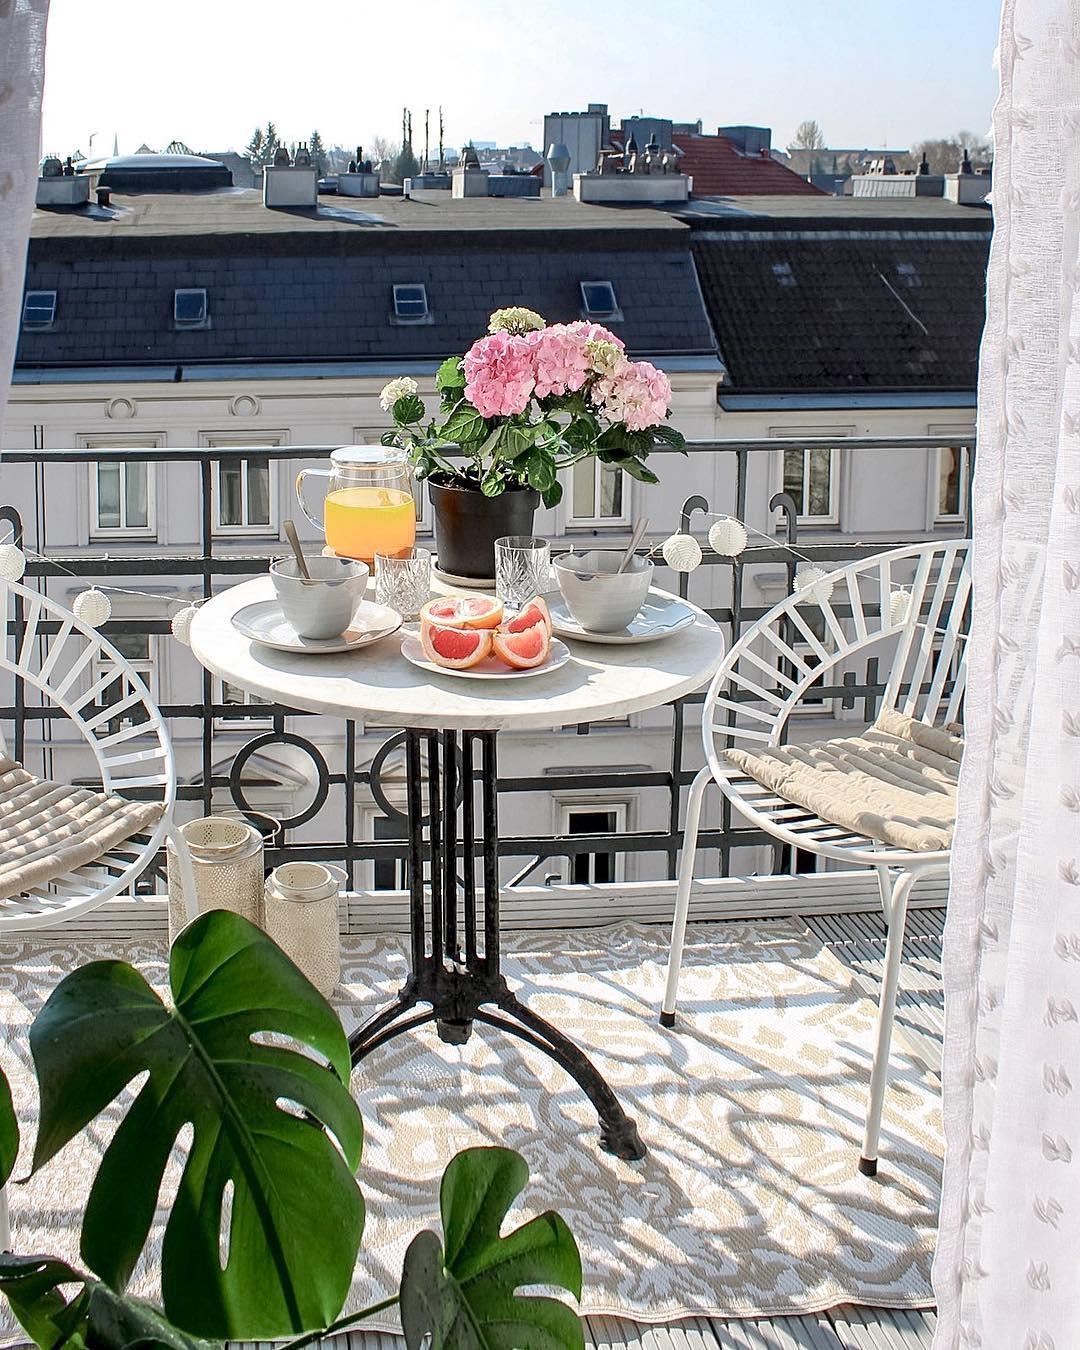 Schönes #Wetter genießen.

#balkon #balkonien #livingchallenge #kücheneinrichtung #frühstück #frühling #altbau #deko 